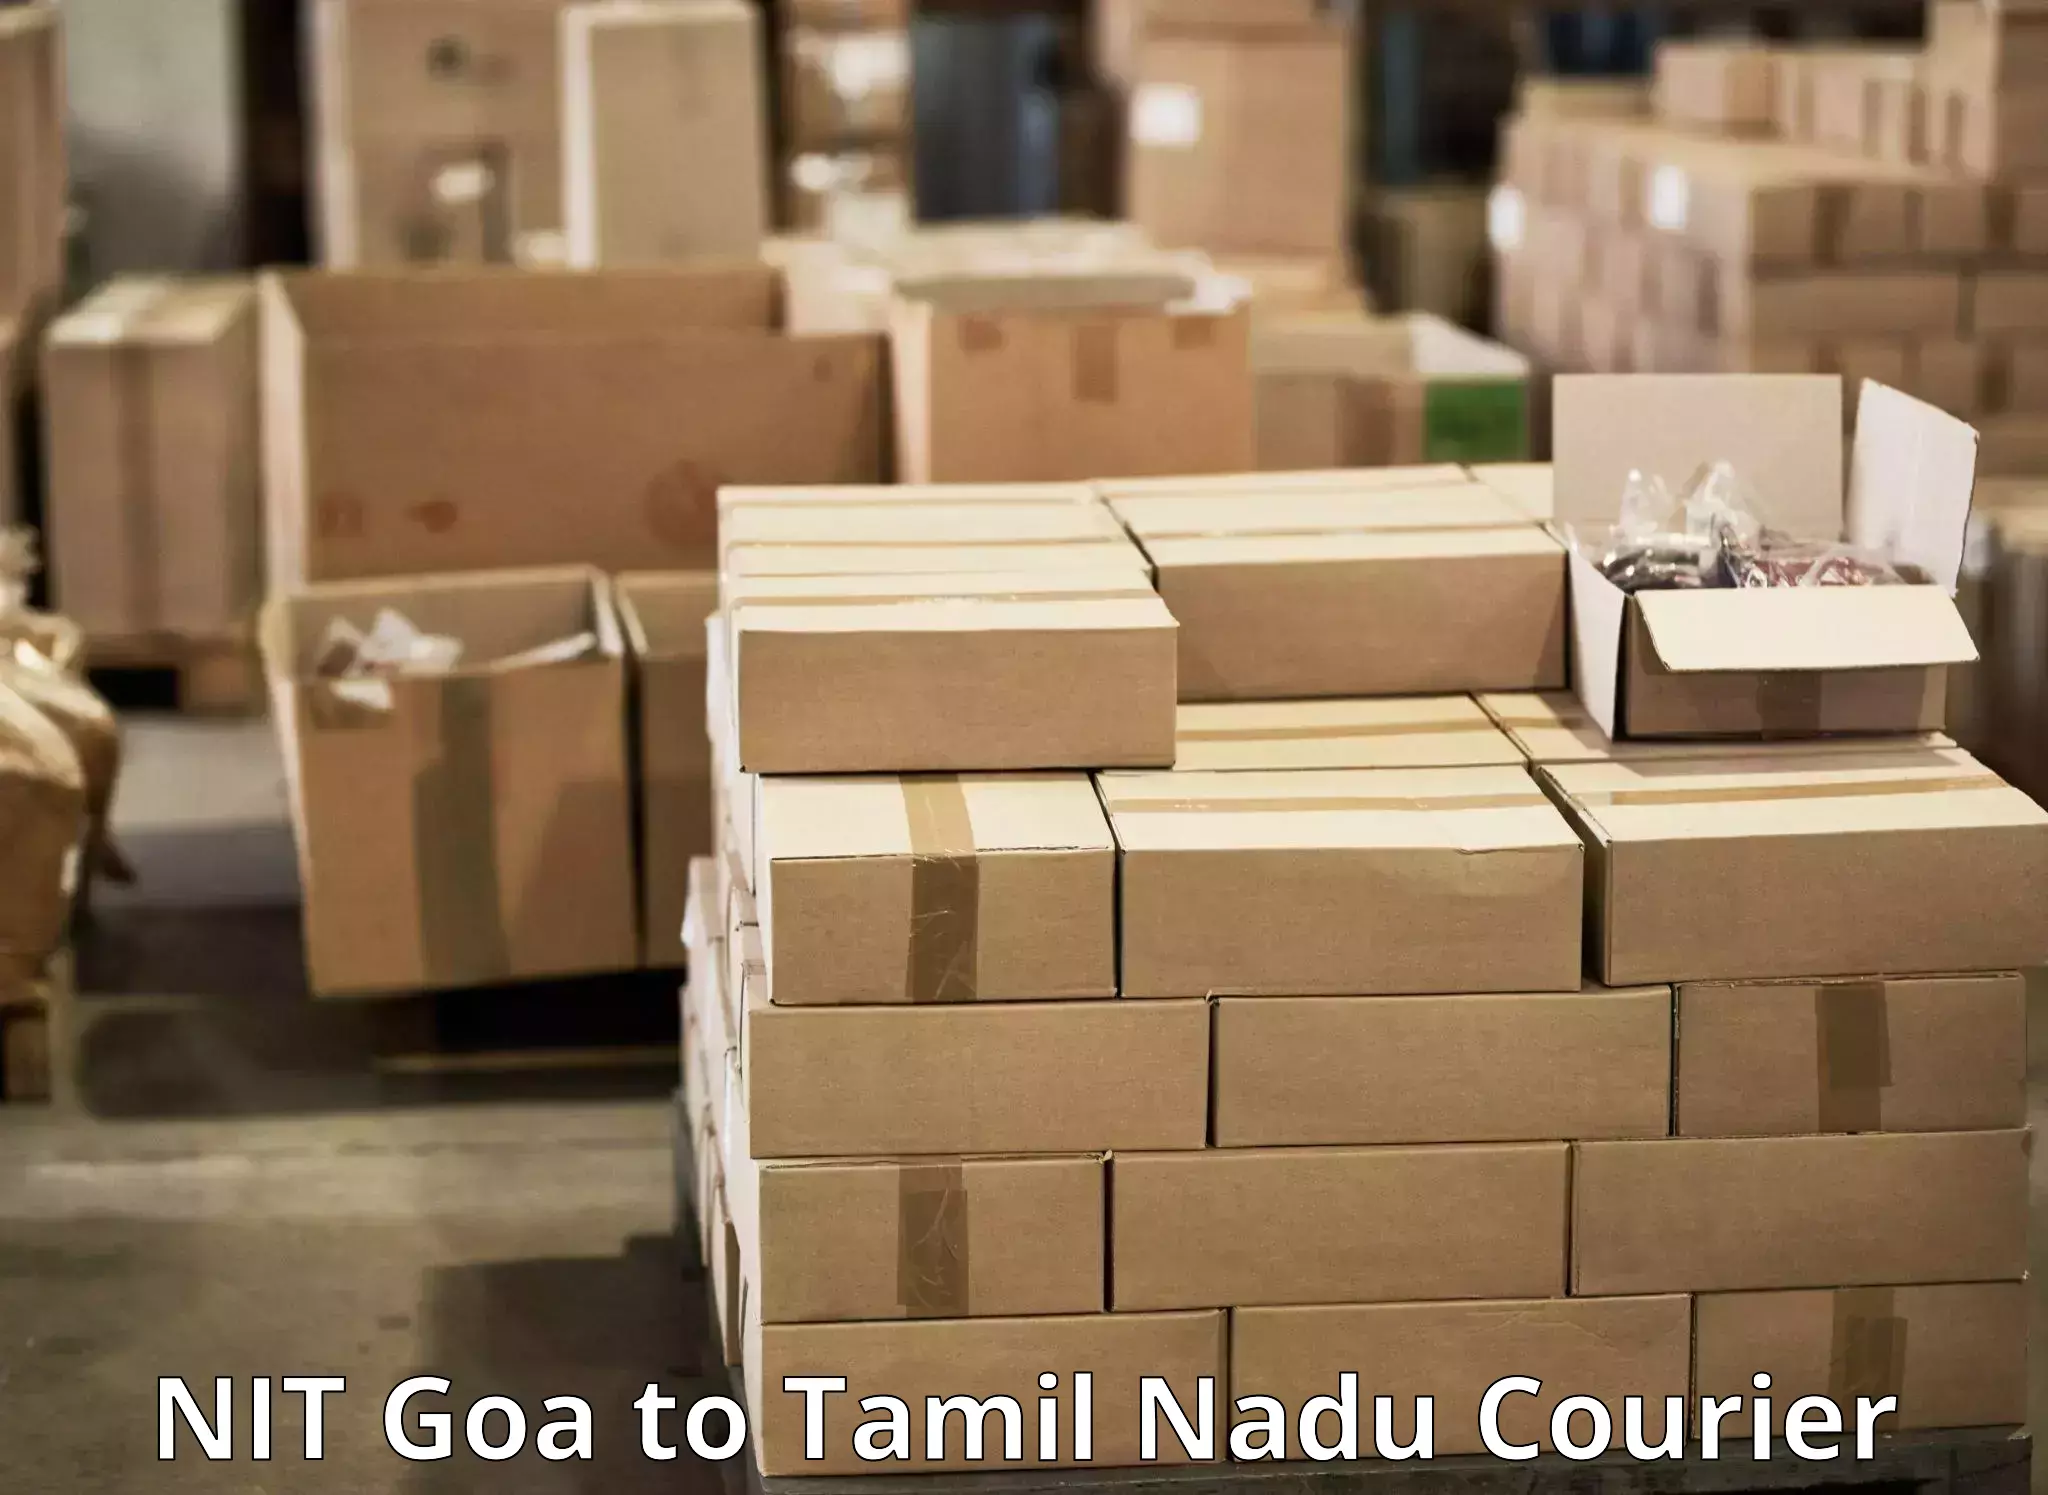 User-friendly courier app NIT Goa to Polur